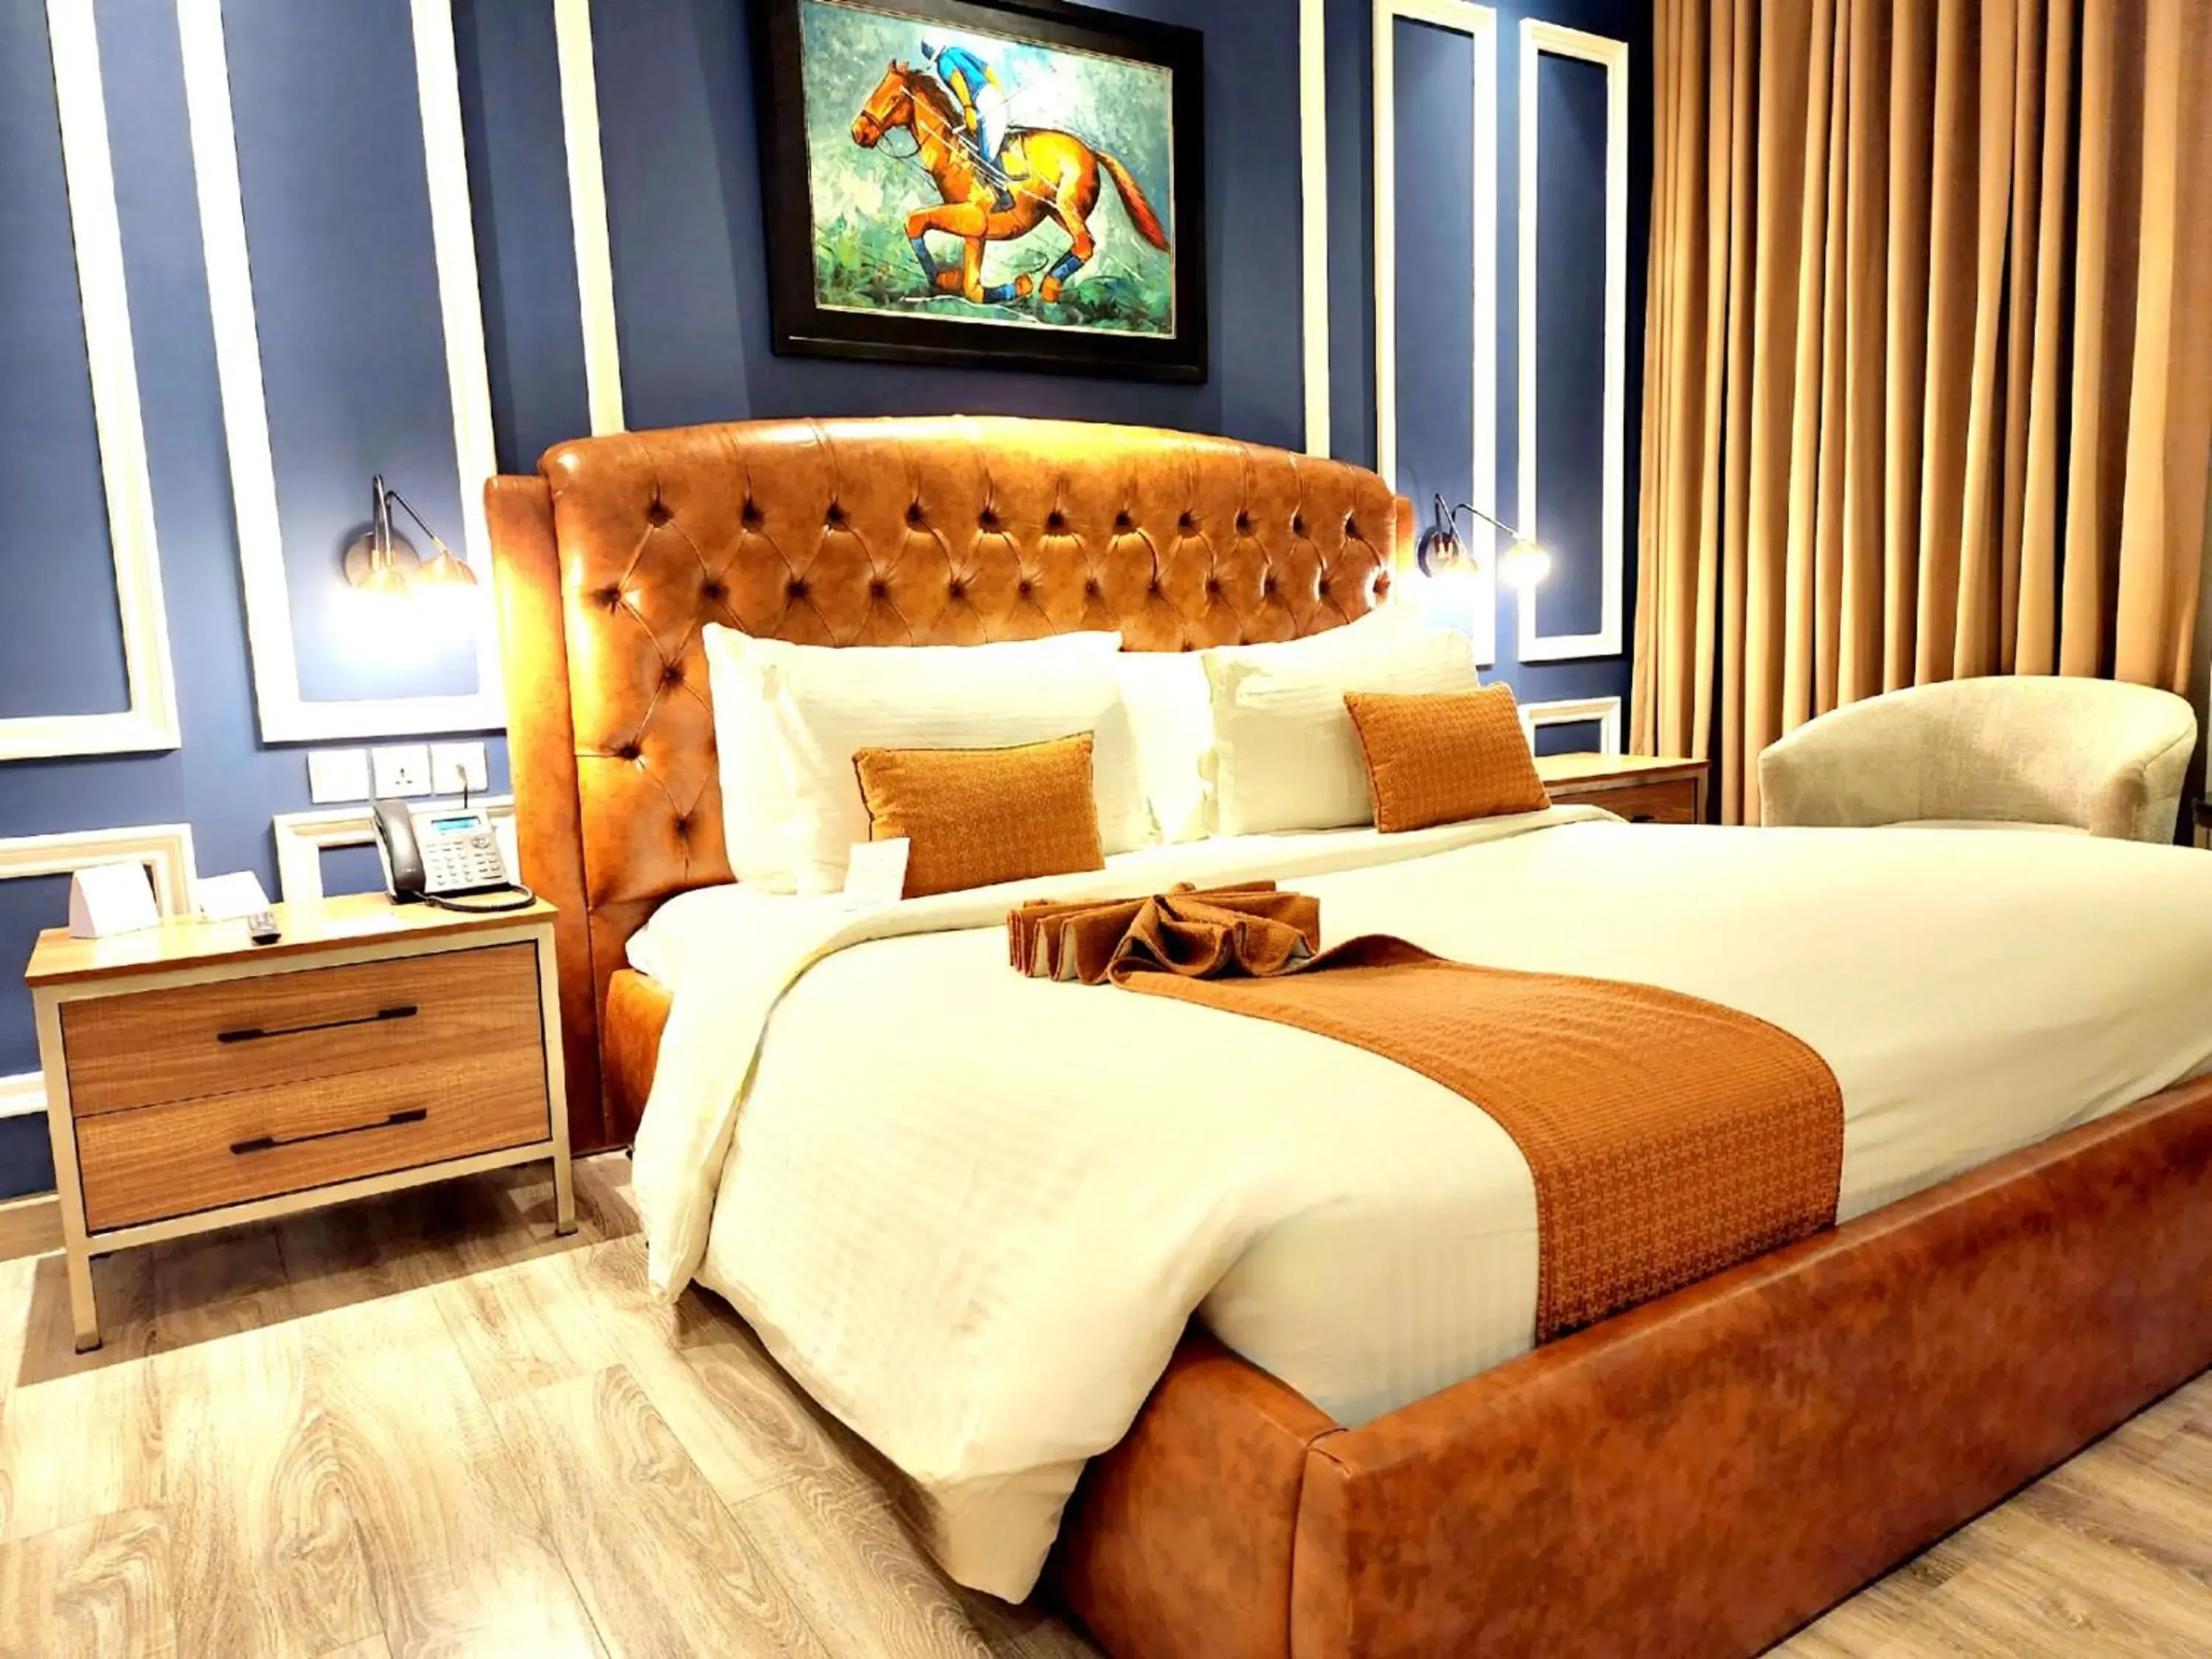 Bedroom, Bed in Best Western Premier Hotel Gulberg Lahore